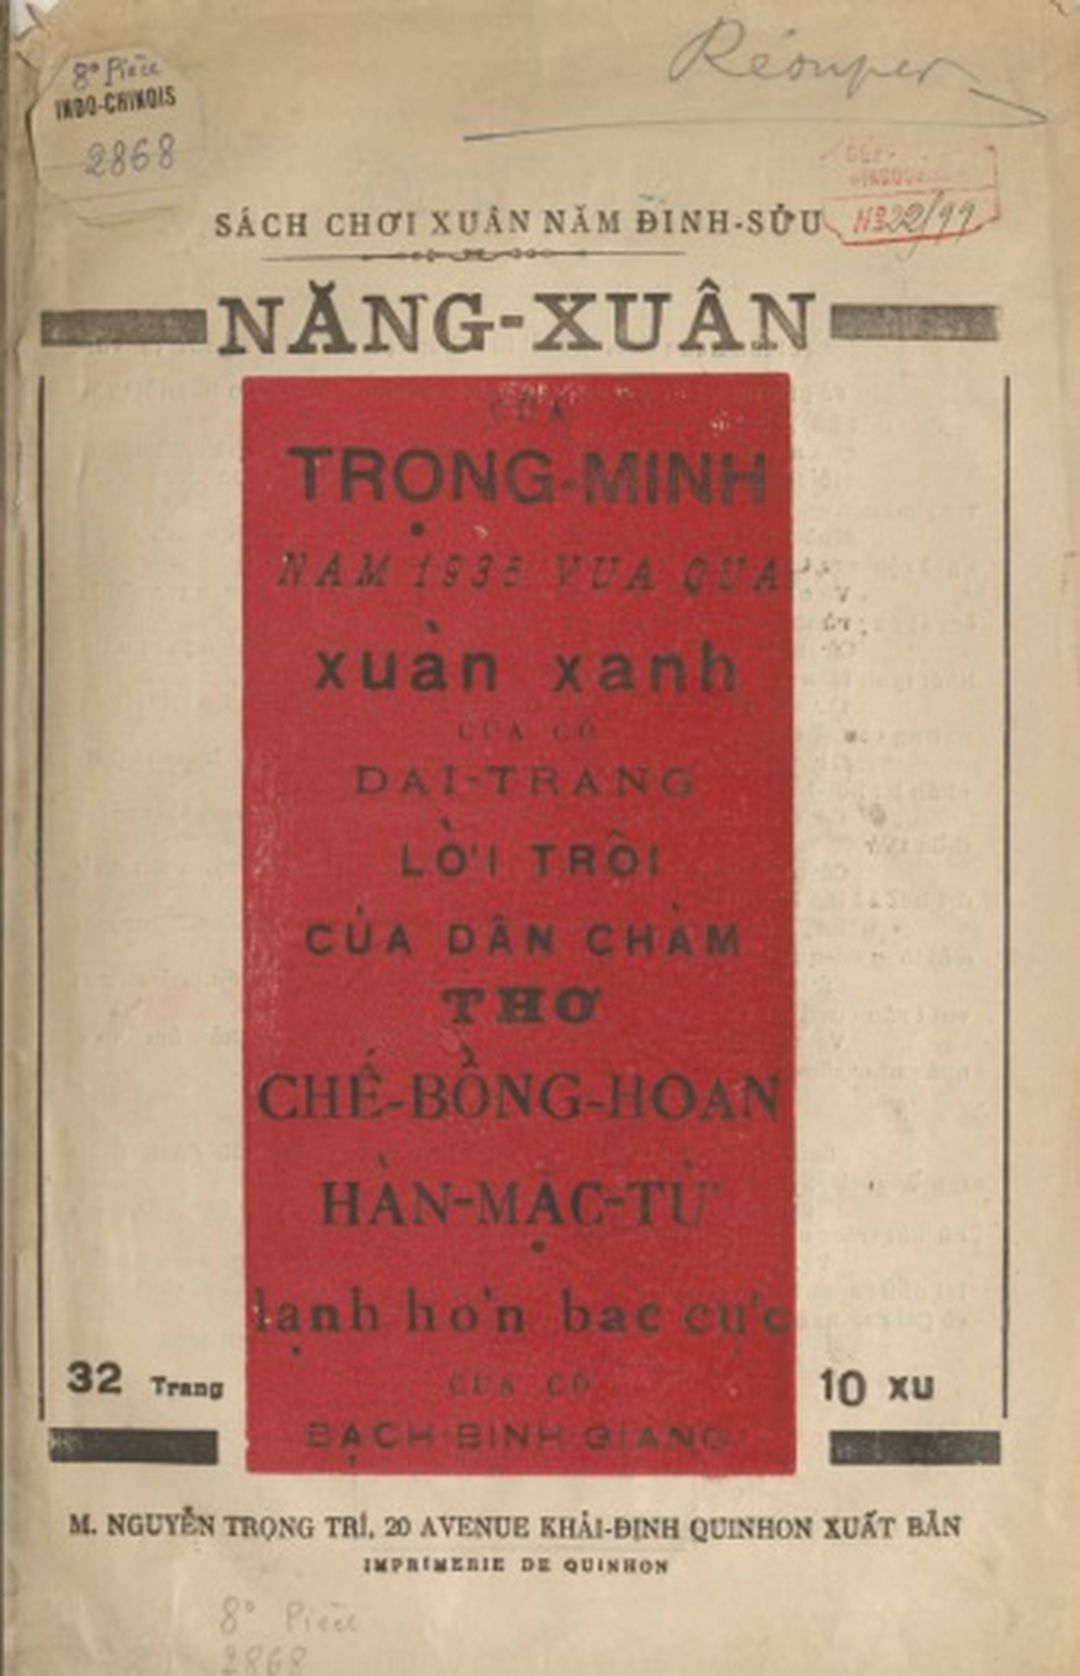 Hàn Mặc Tử xuất bản sách xuân, tặng thơ Chế Lan Viên 